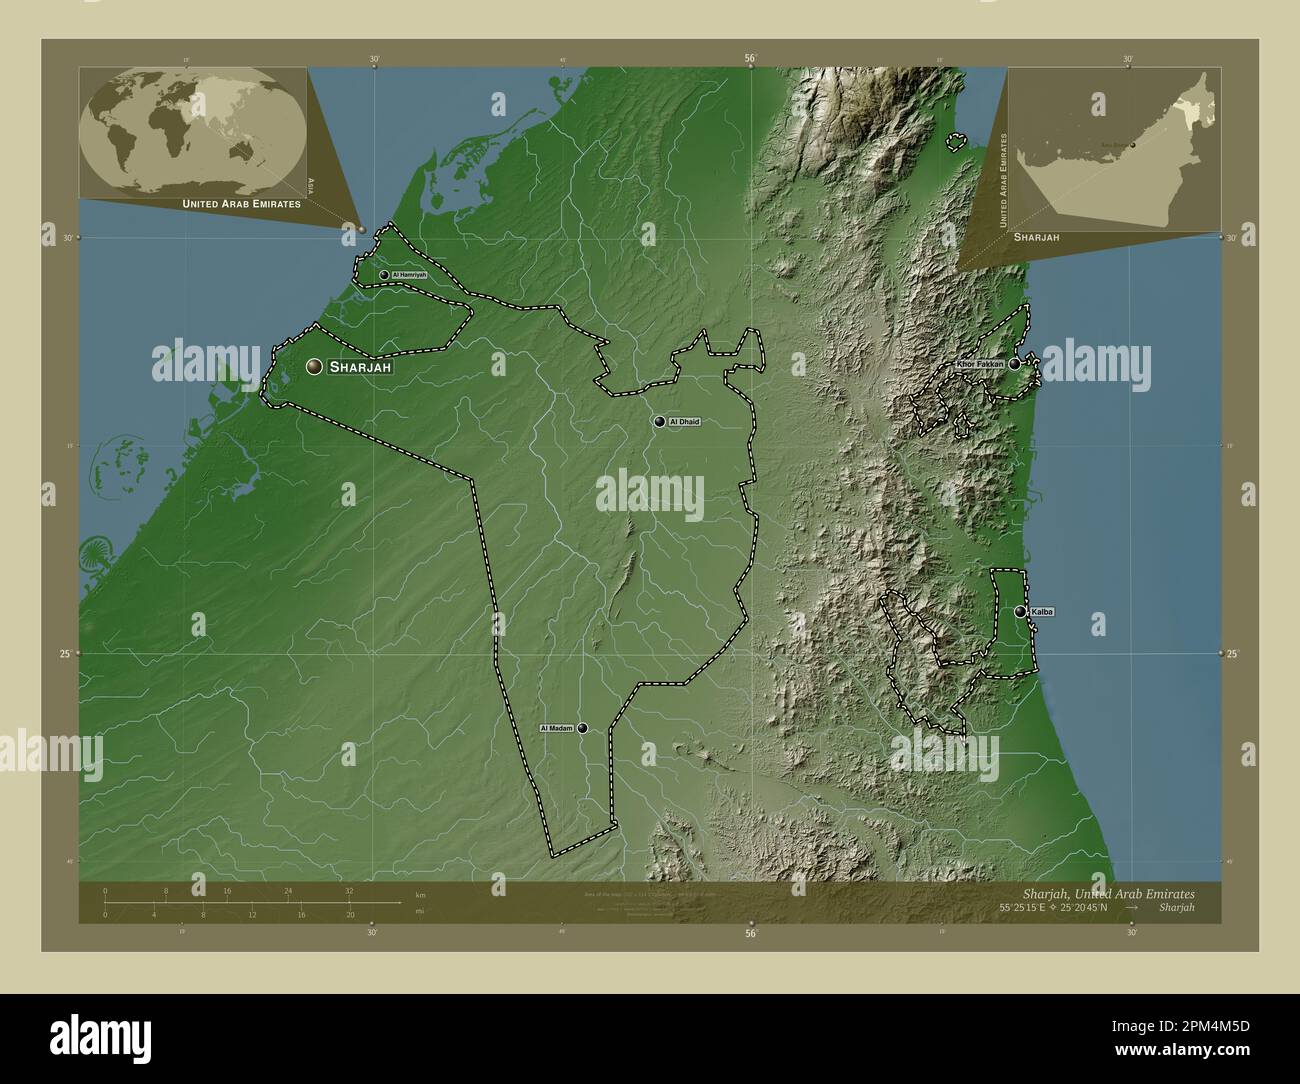 Sharjah, émirat des Émirats arabes Unis. Carte d'altitude colorée en style wiki avec lacs et rivières. Lieux et noms des principales villes de la région Banque D'Images